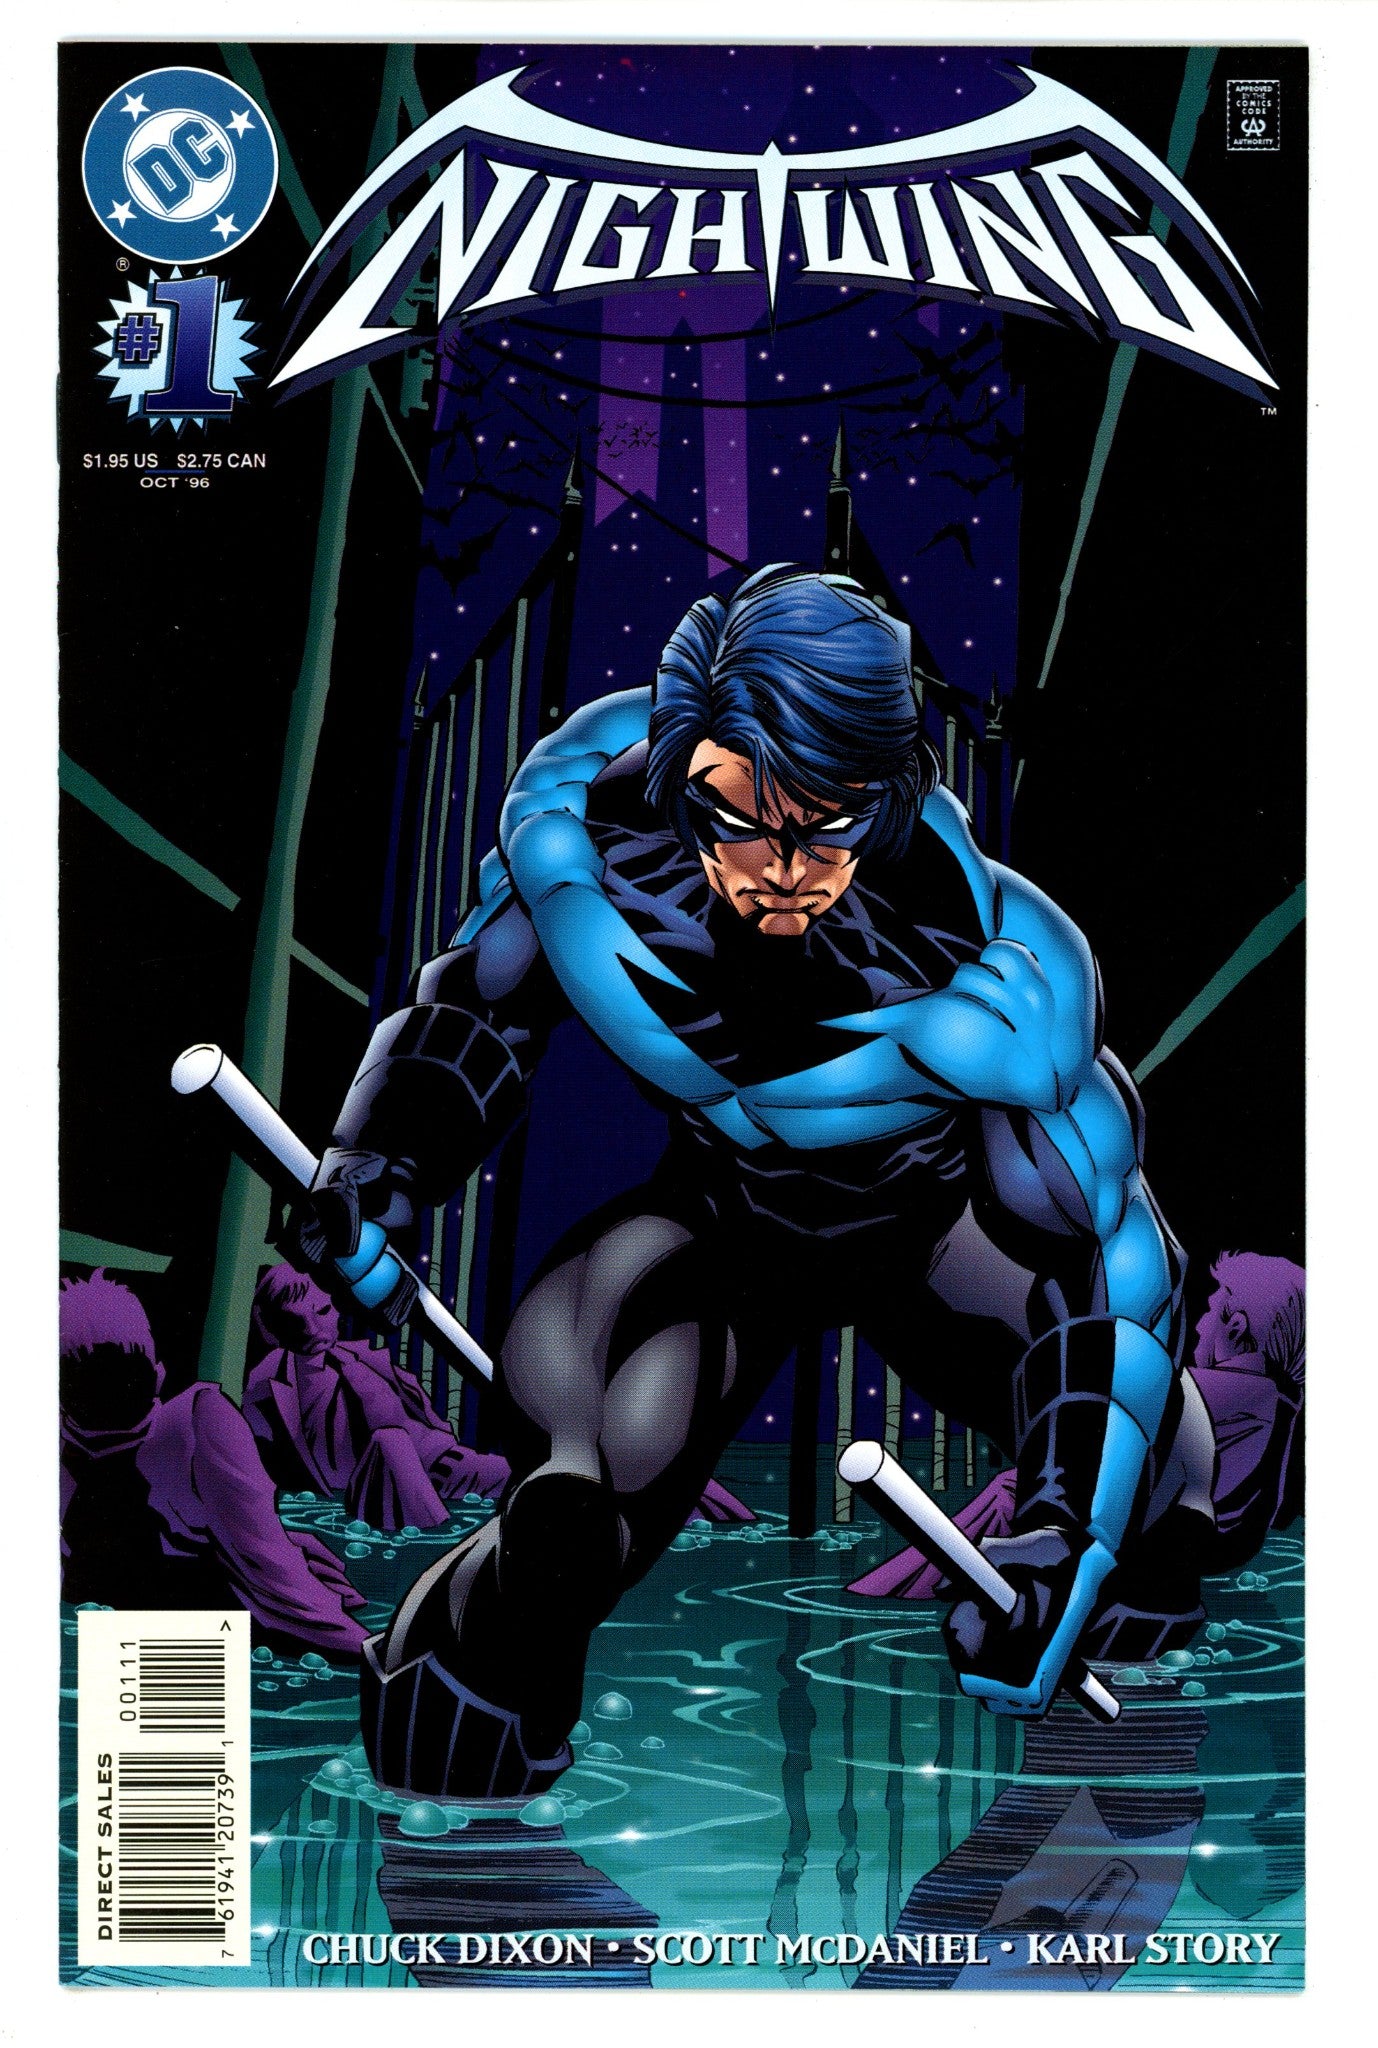 Nightwing Vol 2 1 VF+ (8.5) (1996) 